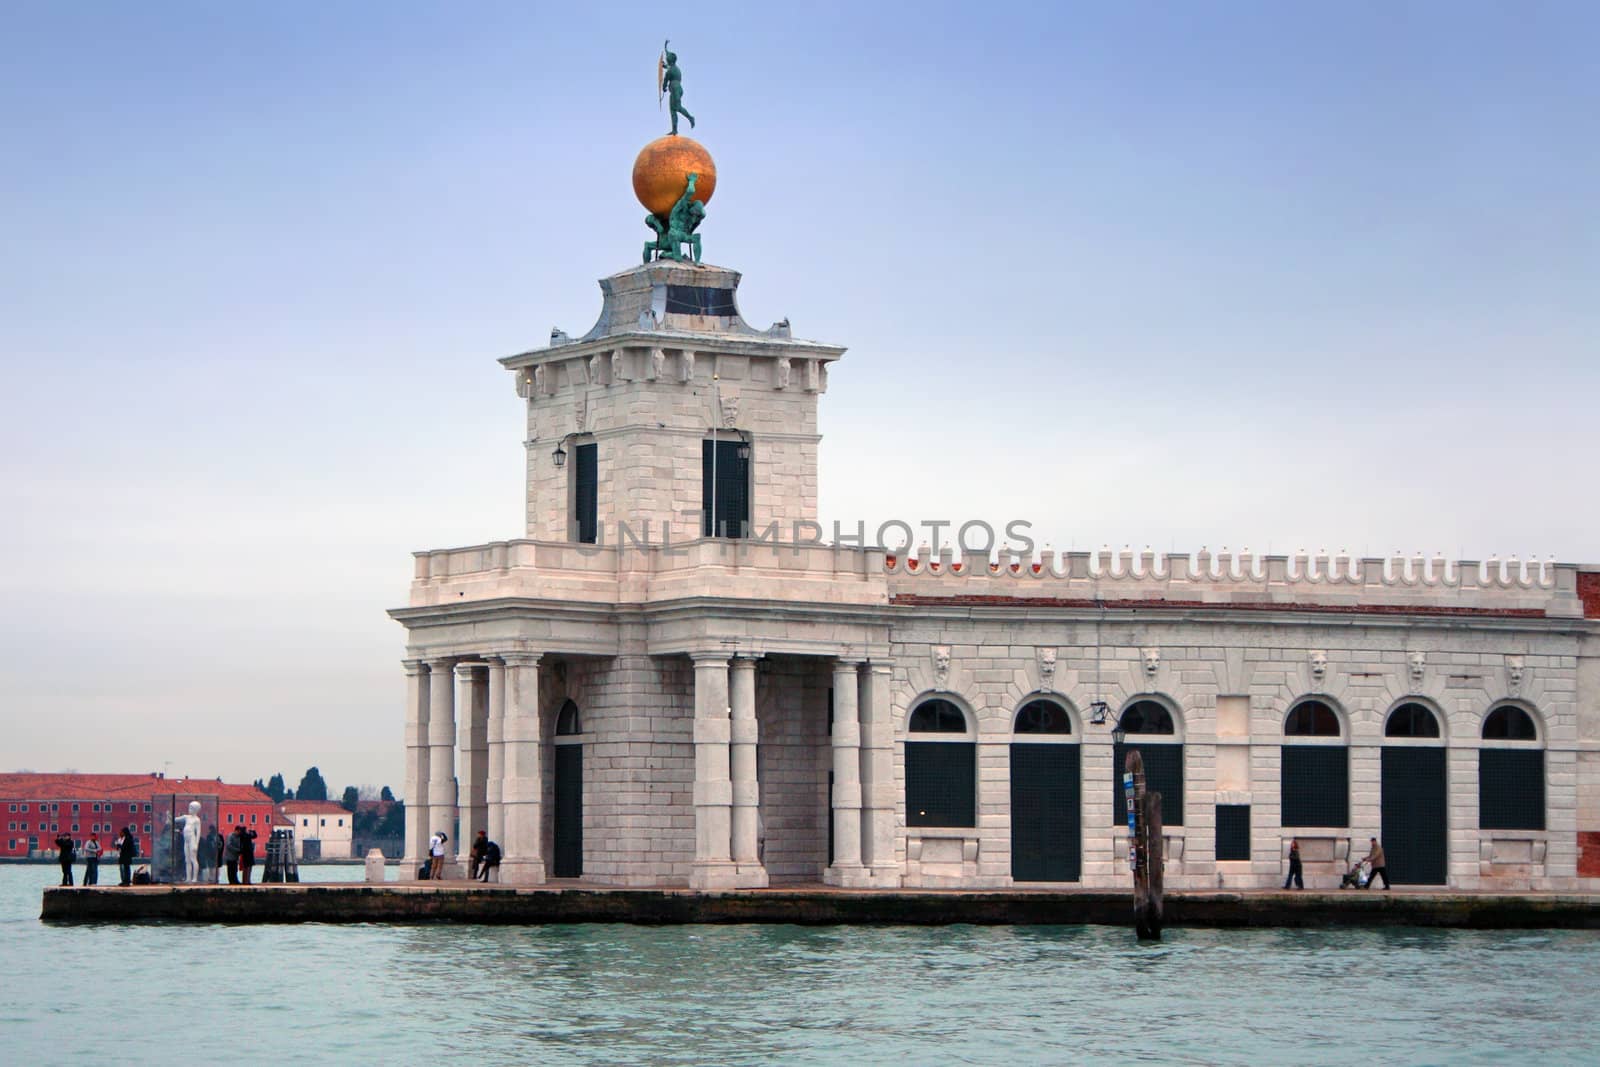 Italy, Venice: Punta della Dogana by landon